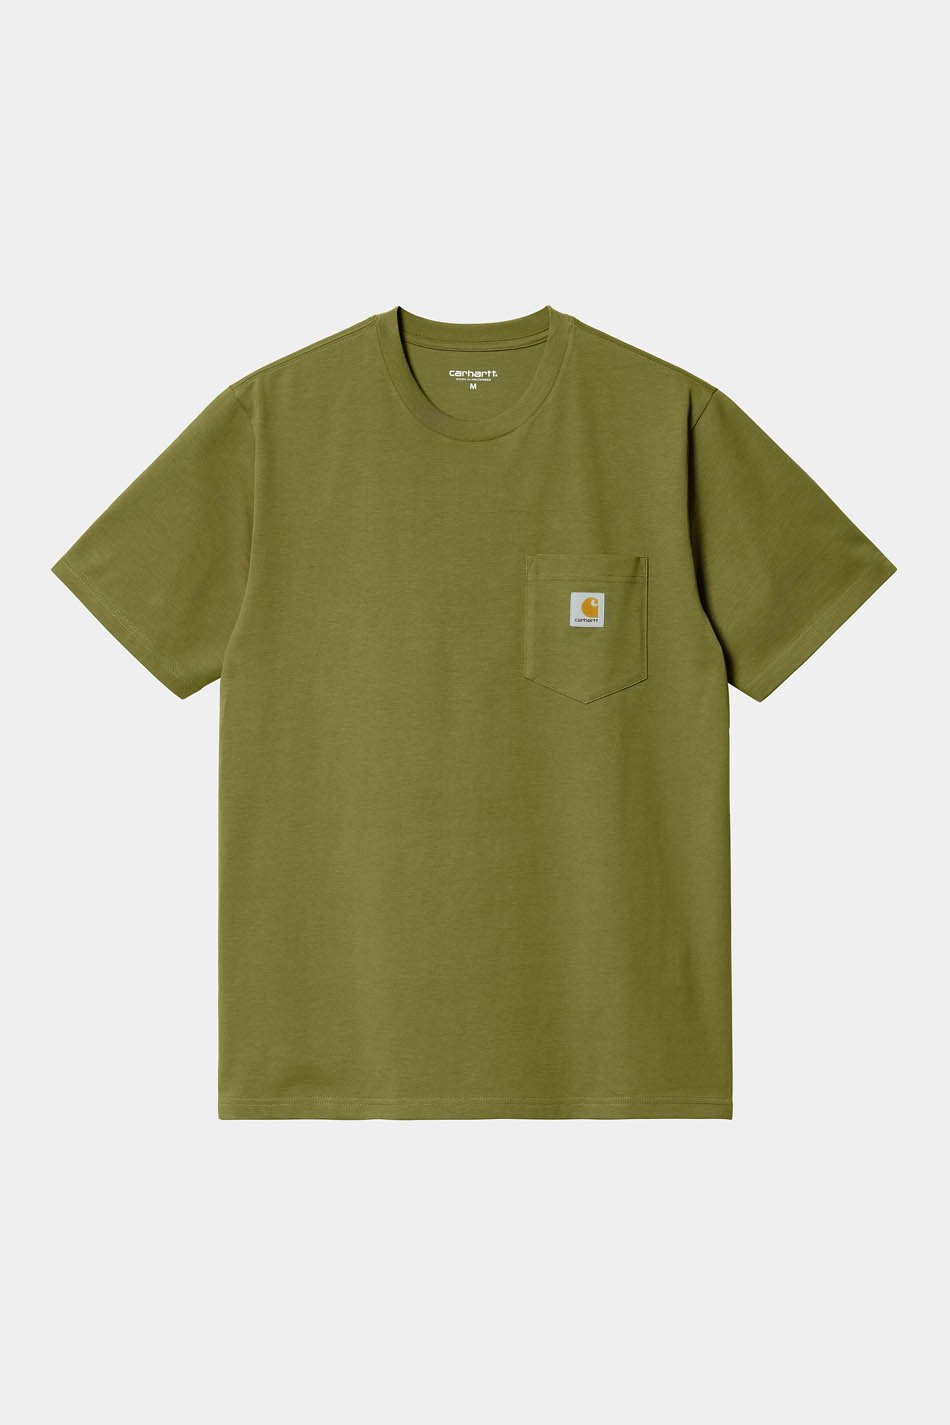 Tee-shirt Carhartt WIP Pocket Kiwi